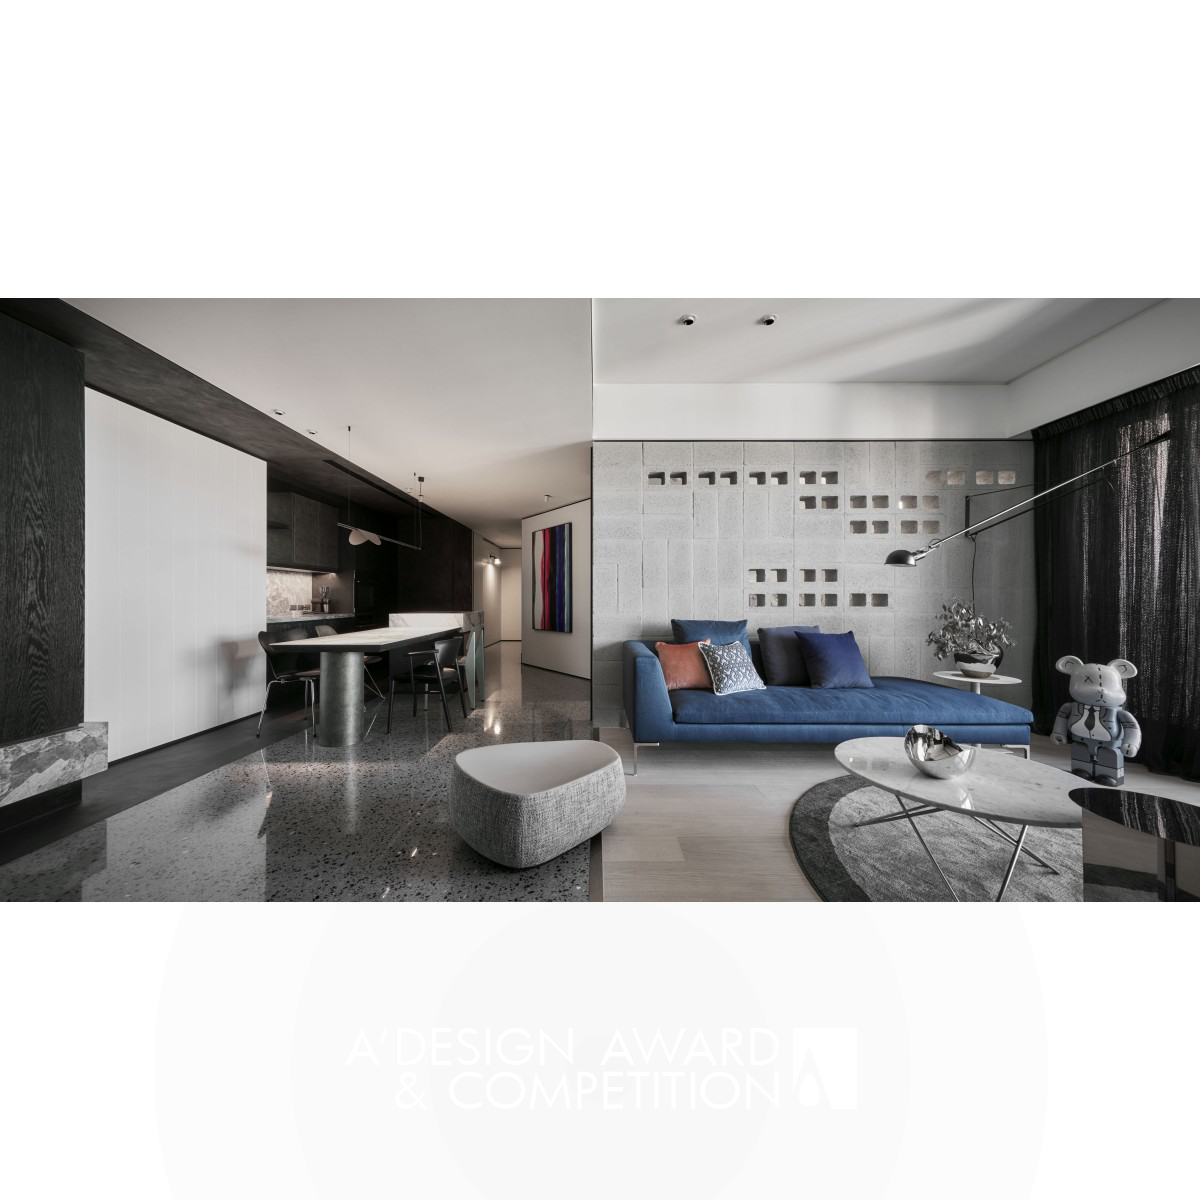  Residential Apartment Interior Design